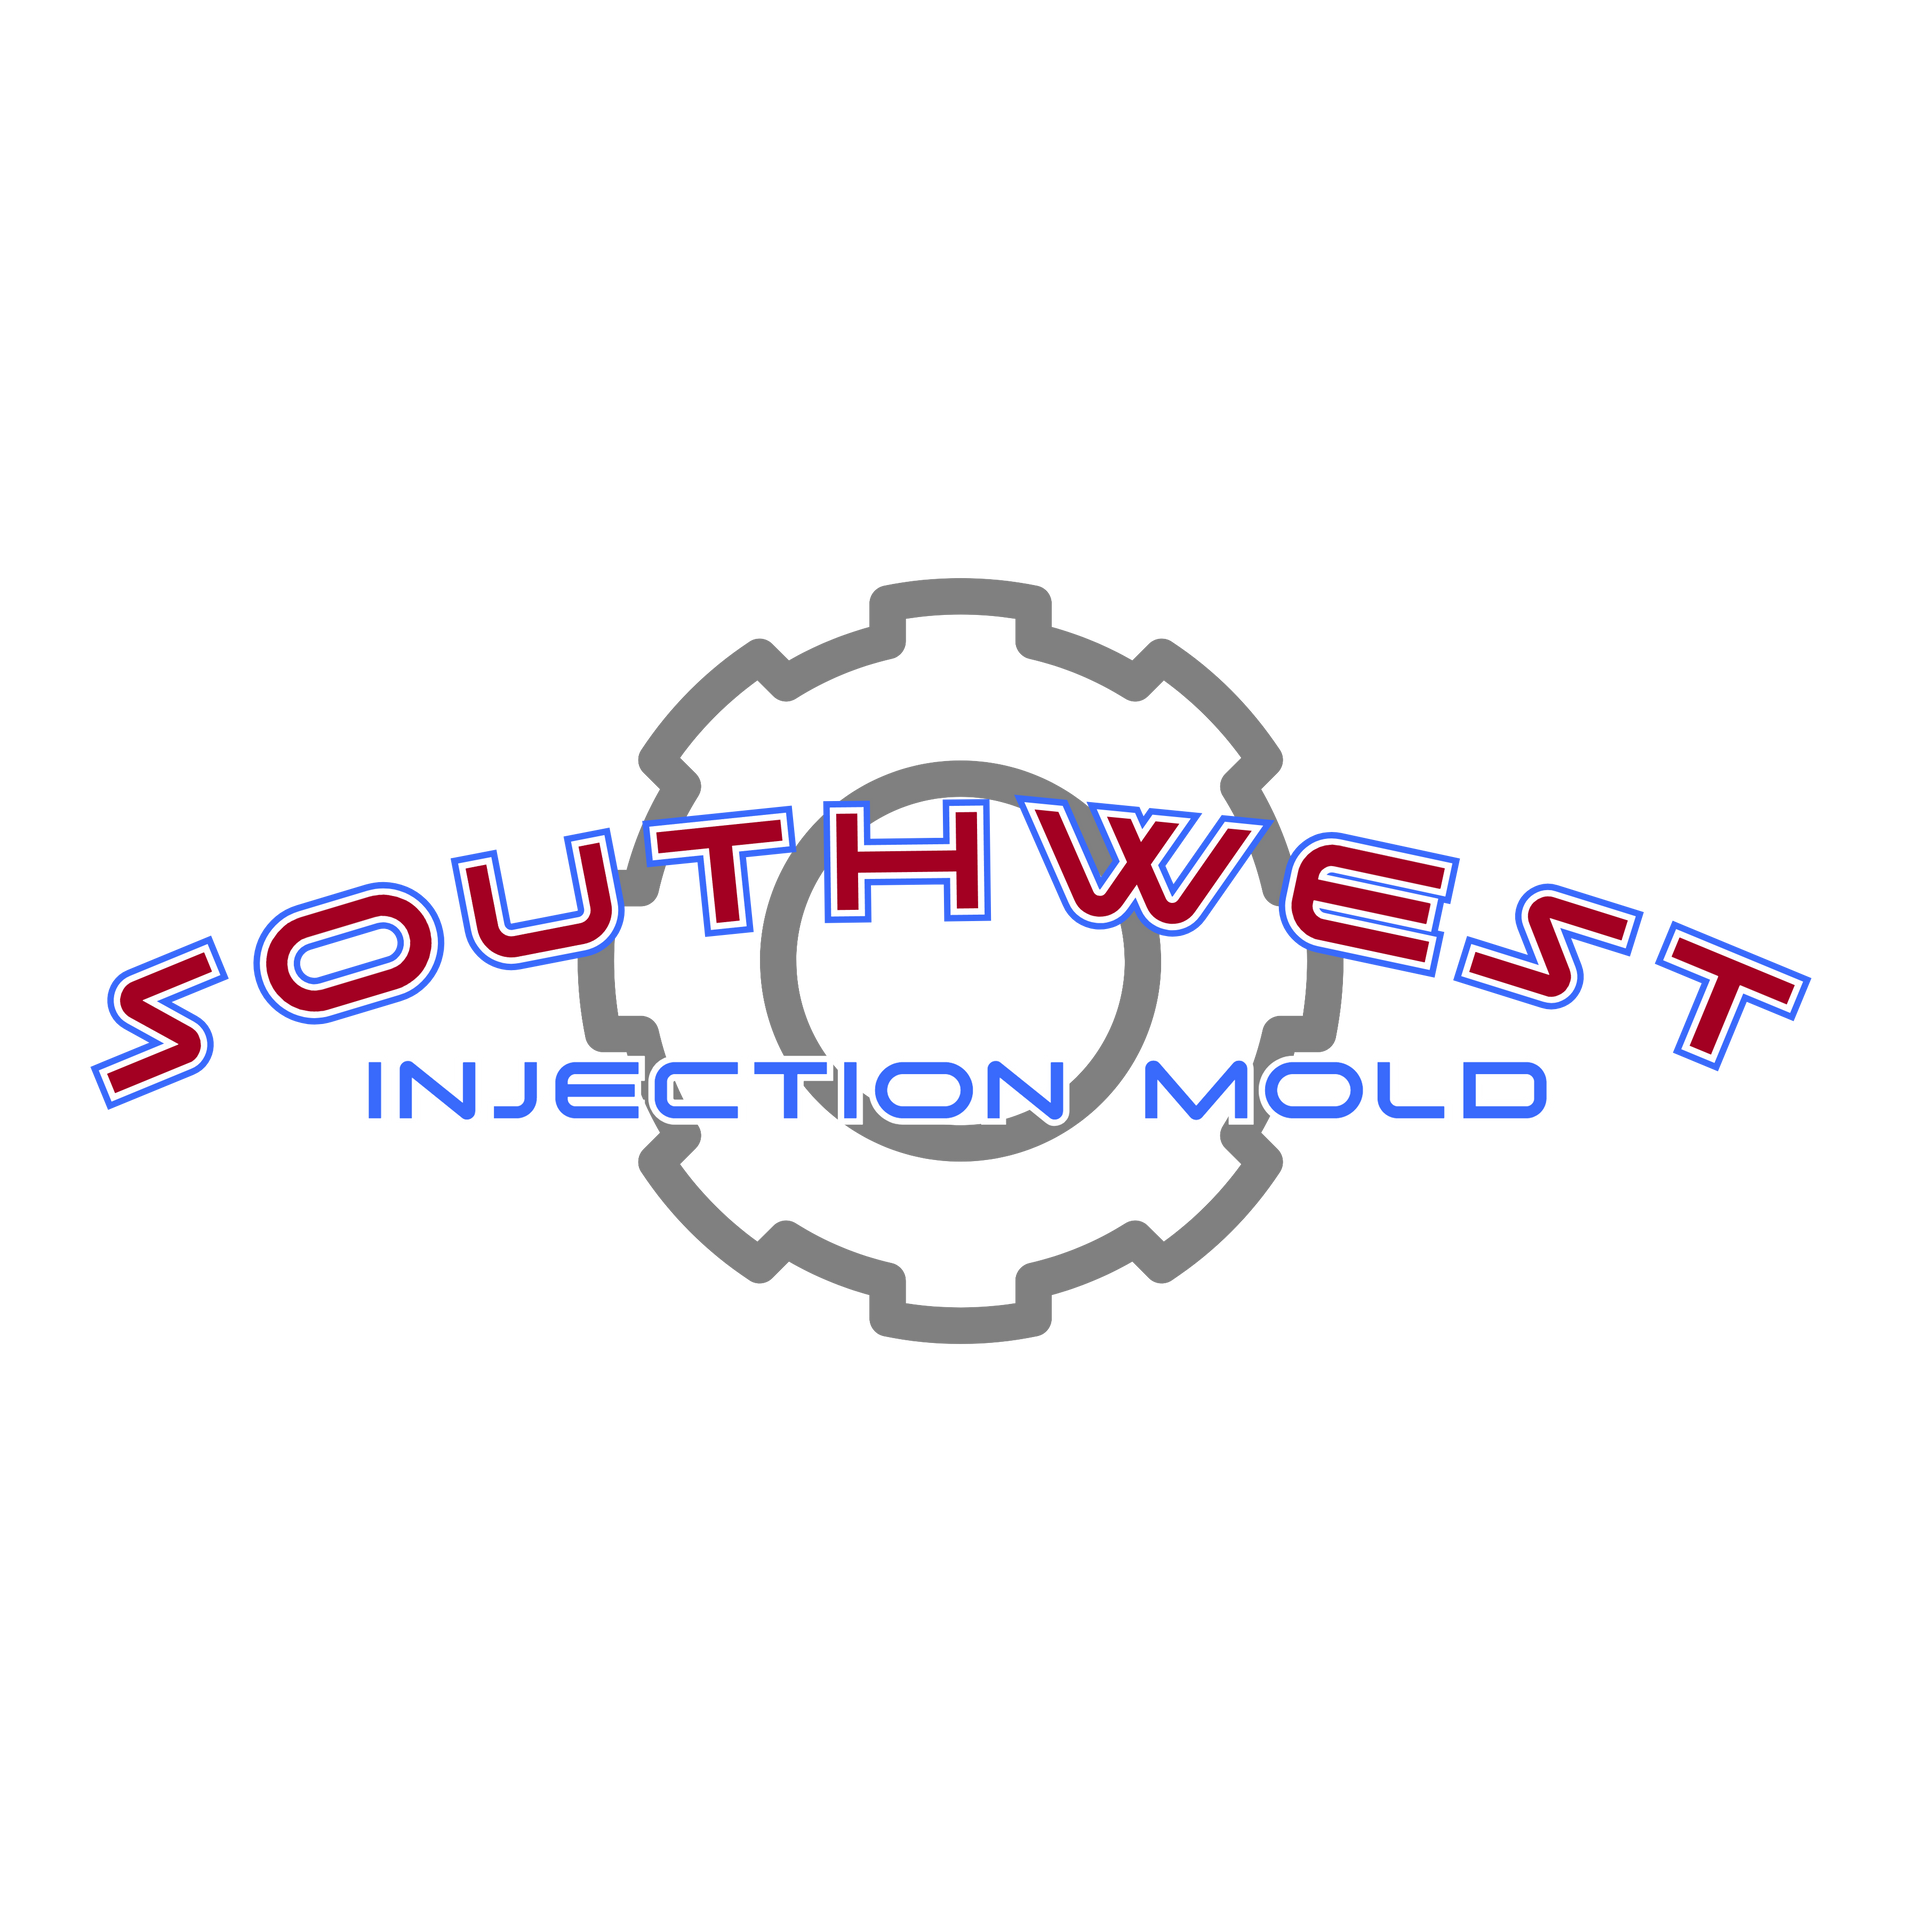 Southwest Injection Mold Logo